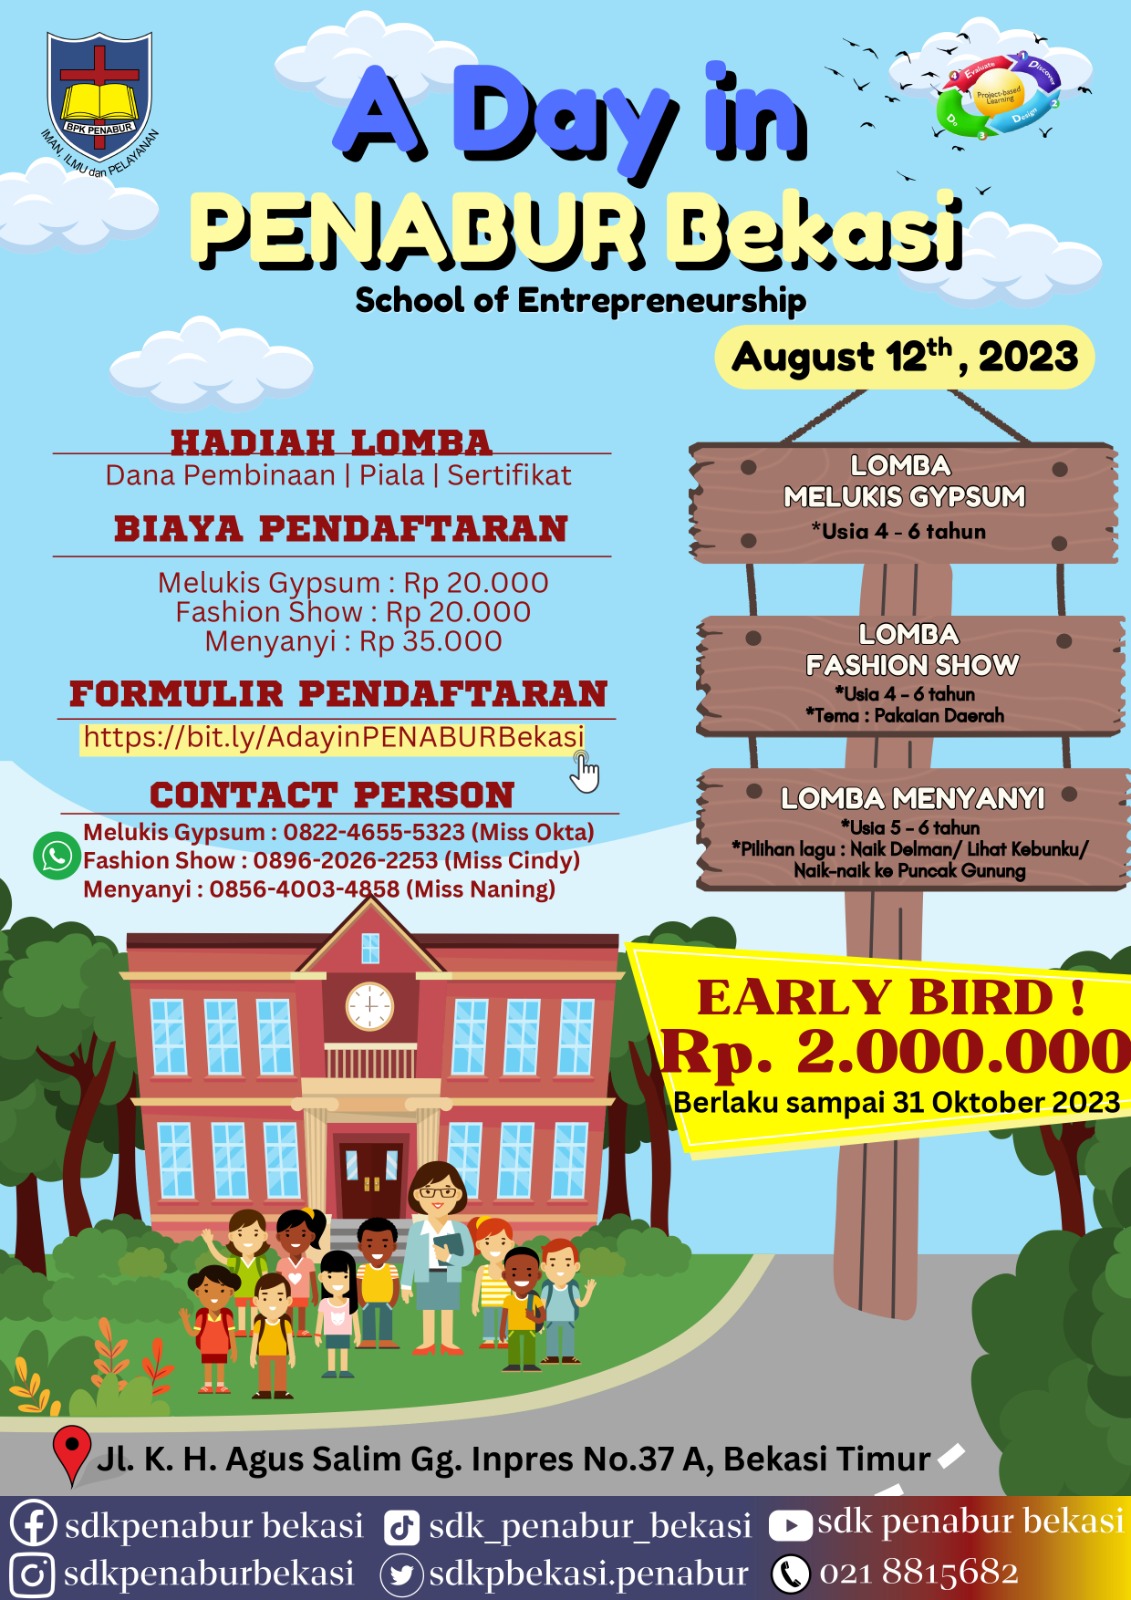 A Day in PENABUR Bekasi